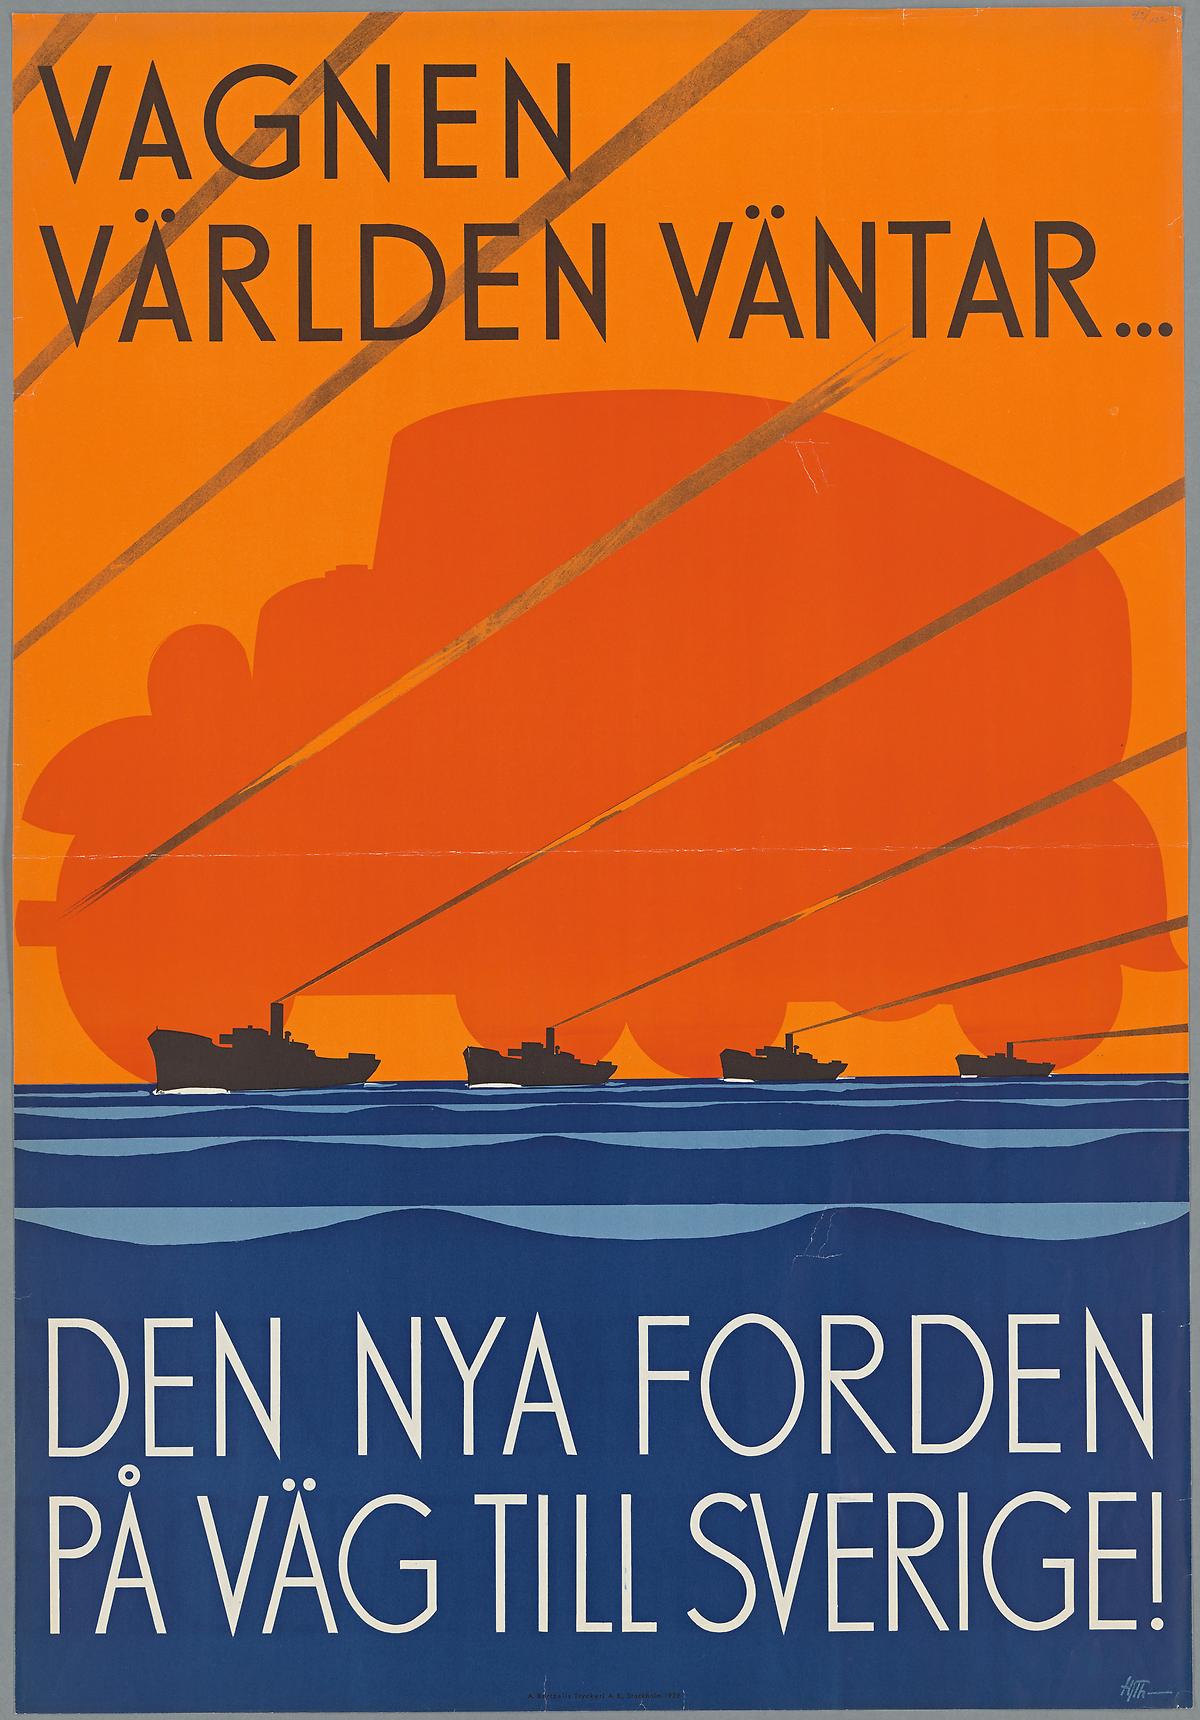 Vagnen världen väntar...Den nya Forden på väg till Sverige! Ill: Hjalmar Thoresson. 1932. Foto KB: Jens Östman